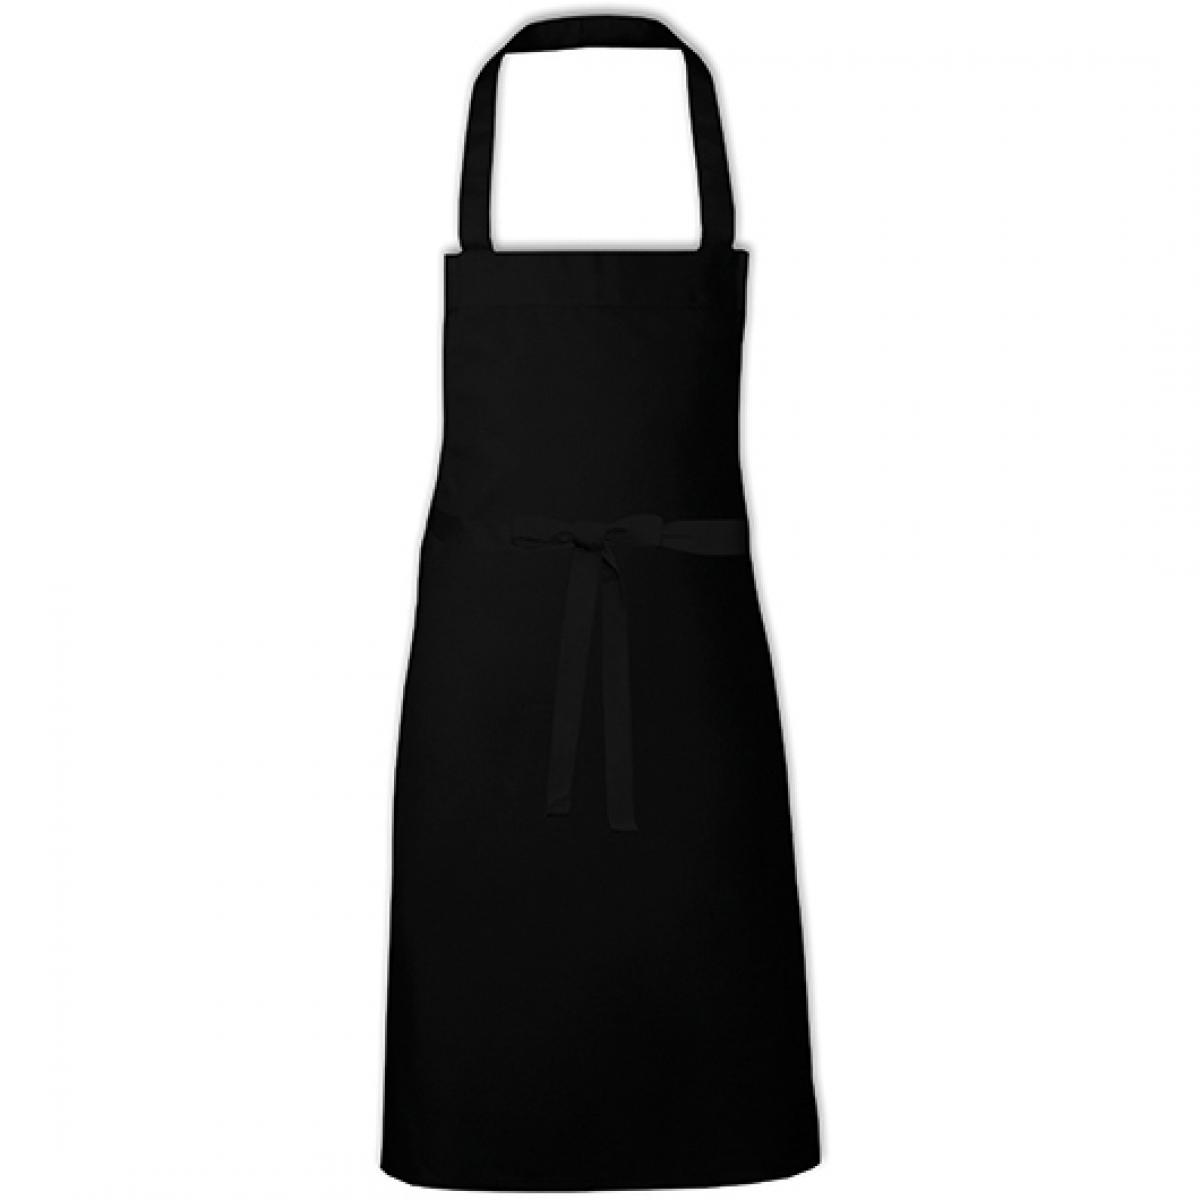 Hersteller: Link Kitchen Wear Herstellernummer: BBQ8073 Artikelbezeichnung: Barbecue Apron - 73 x 80 cm - Waschbar bis 60 °C Farbe: Black